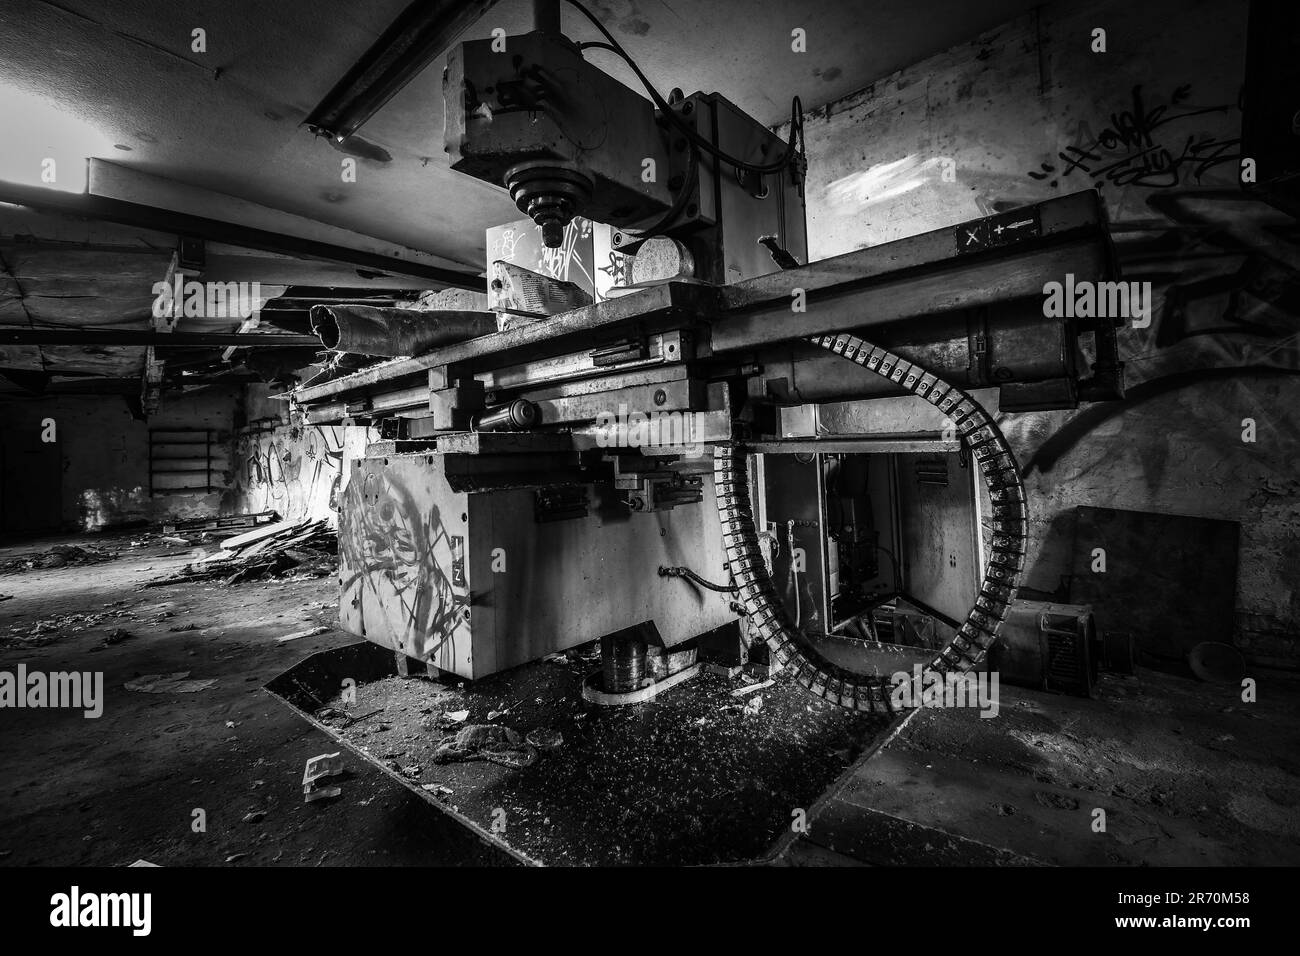 macchinari in un luogo perduto in bianco e nero Foto Stock